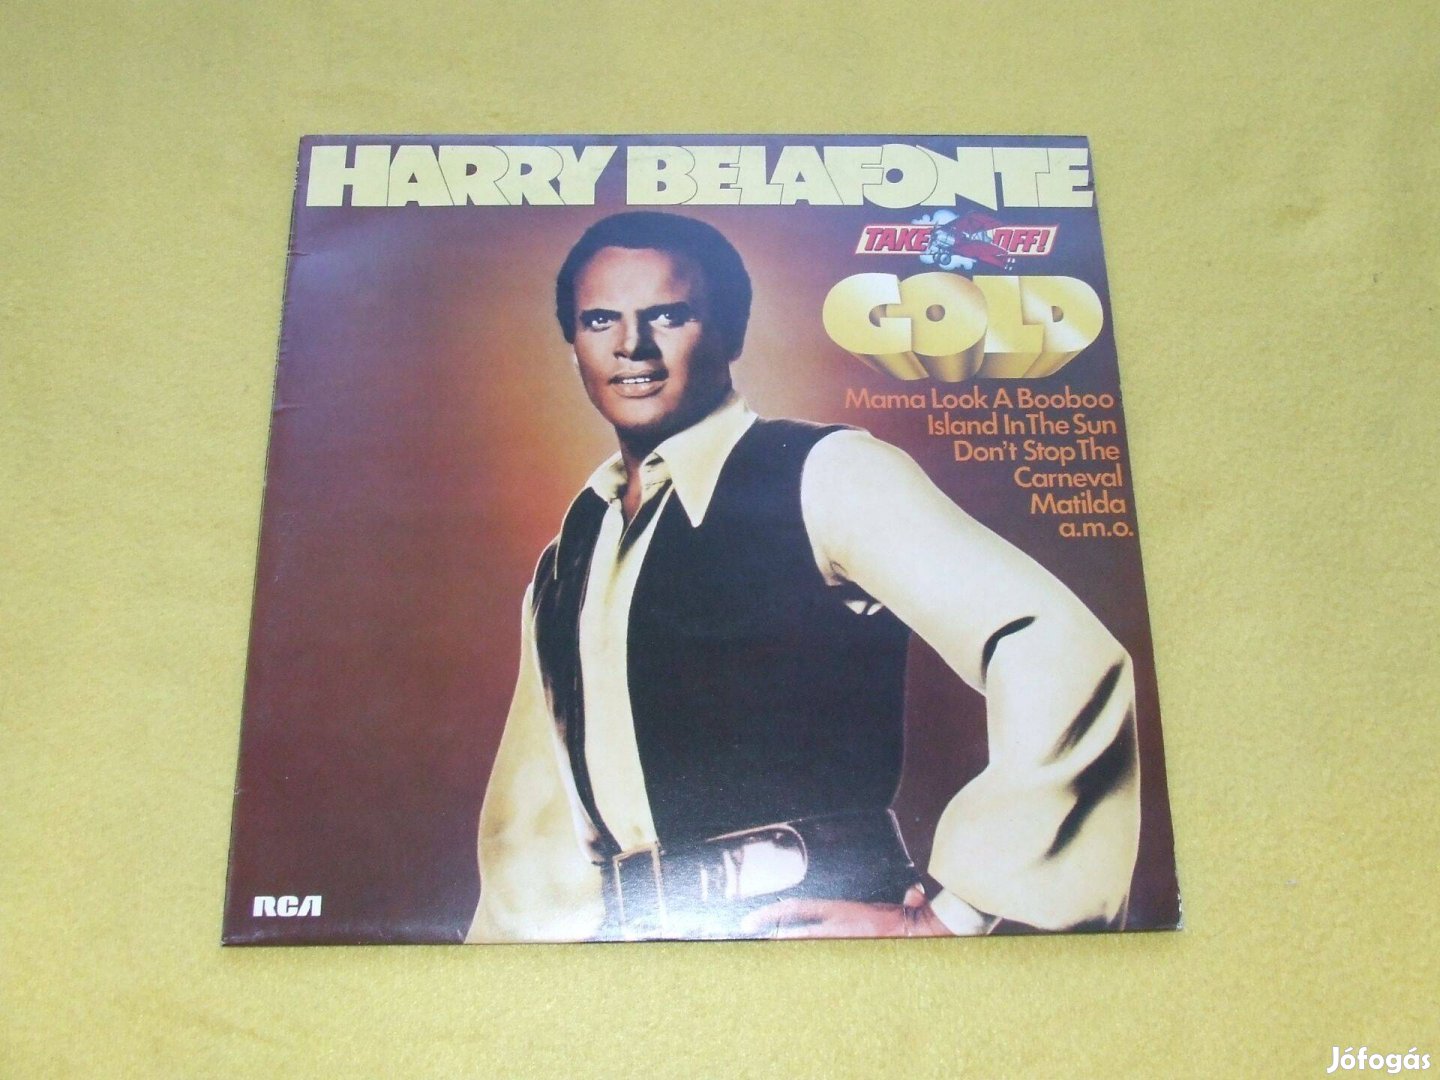 Harry Belafonte: Gold - német nyomású bakelit lemez eladó!